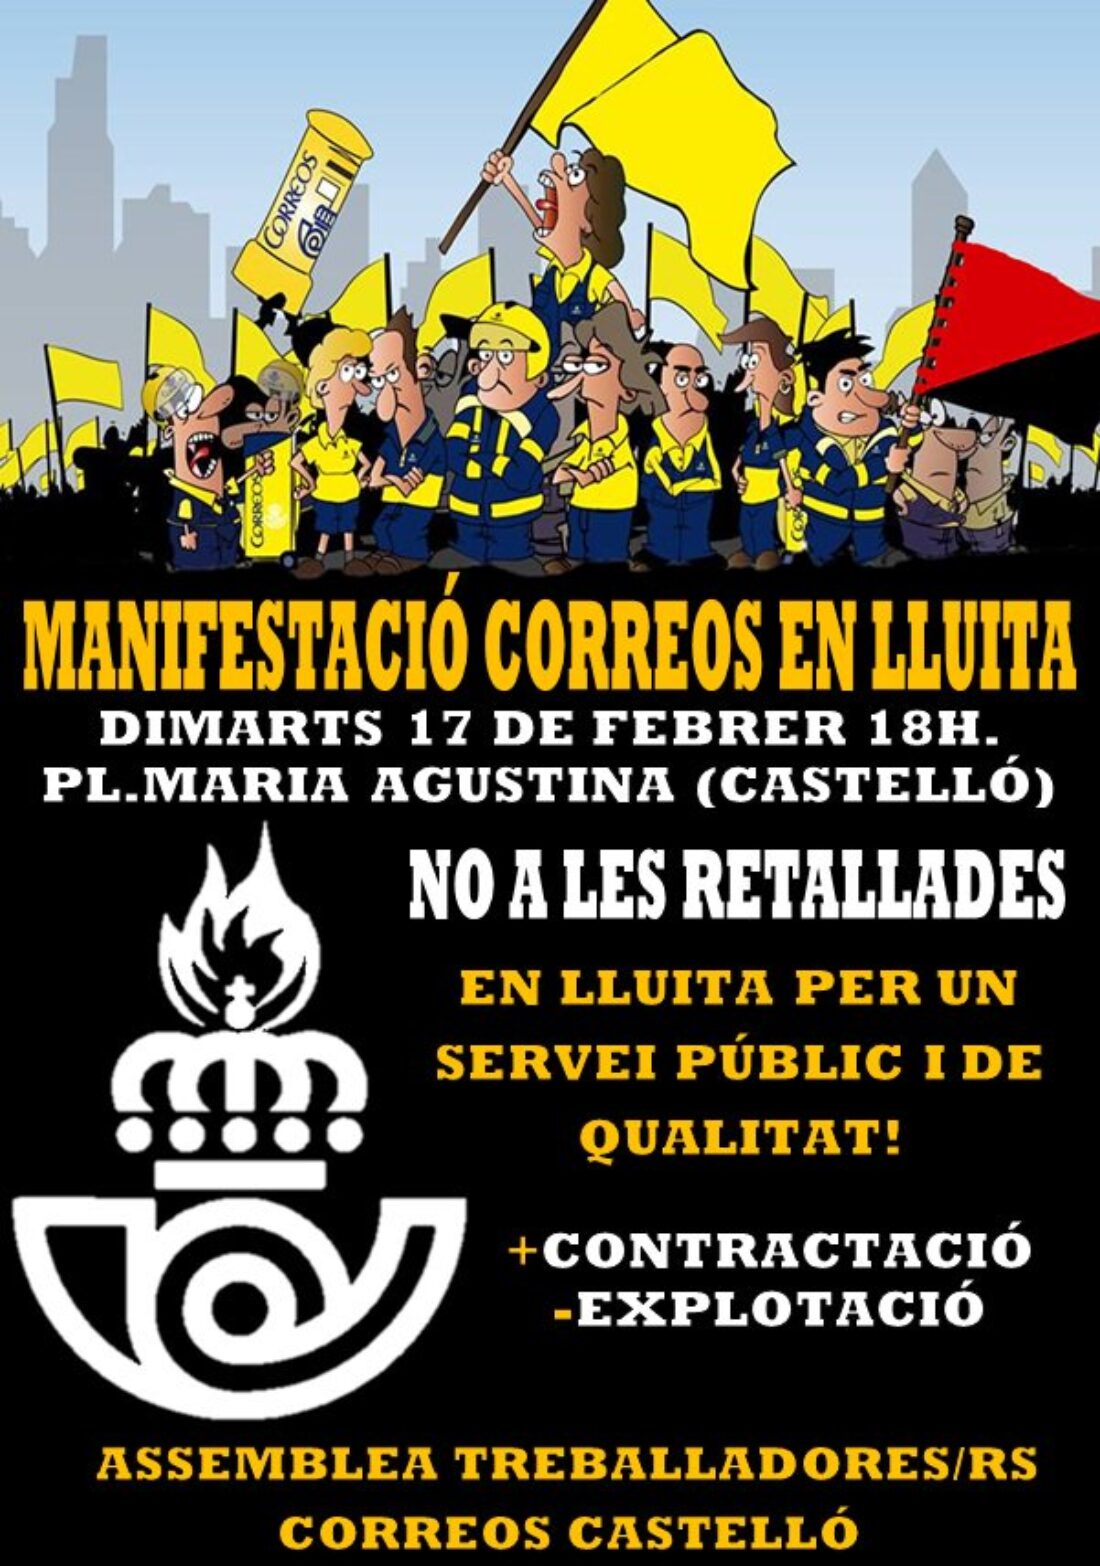 17-f Castelló: Manifestación Correos en lucha